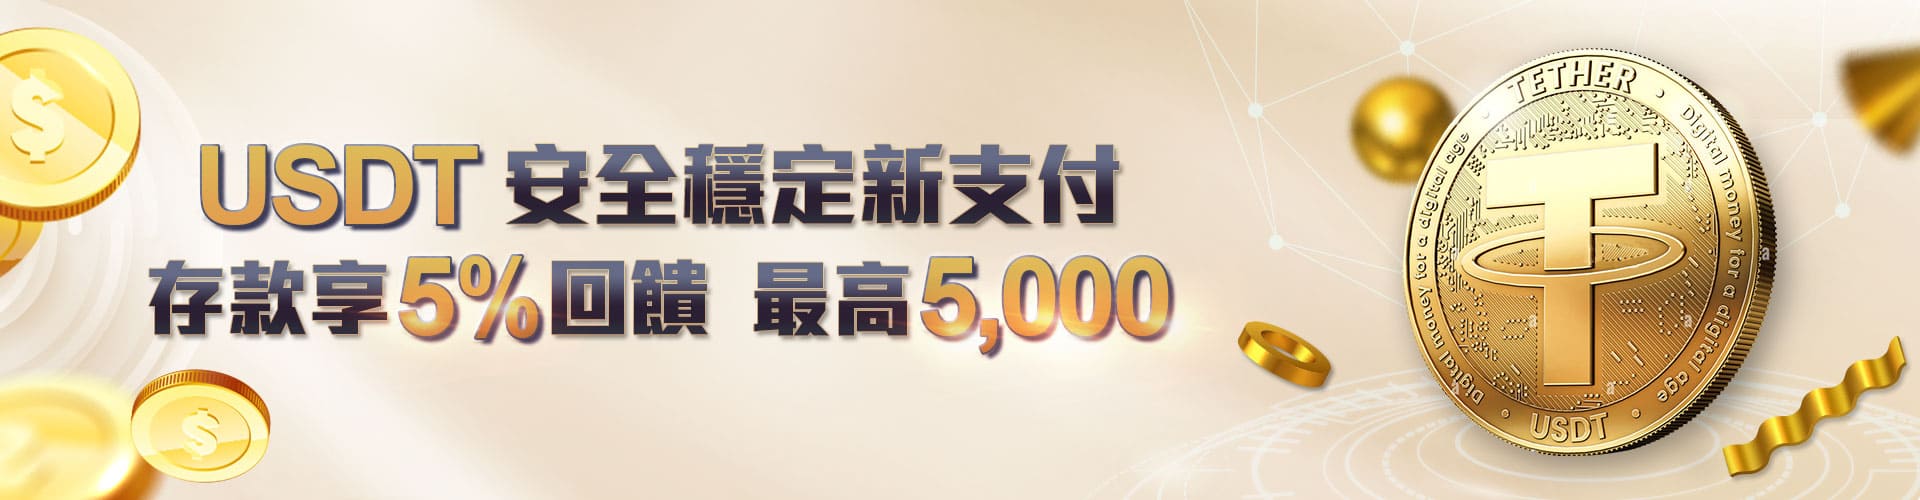 金禾娛樂 - USDT安全穩定新支付存款享5%回饋 最高5000